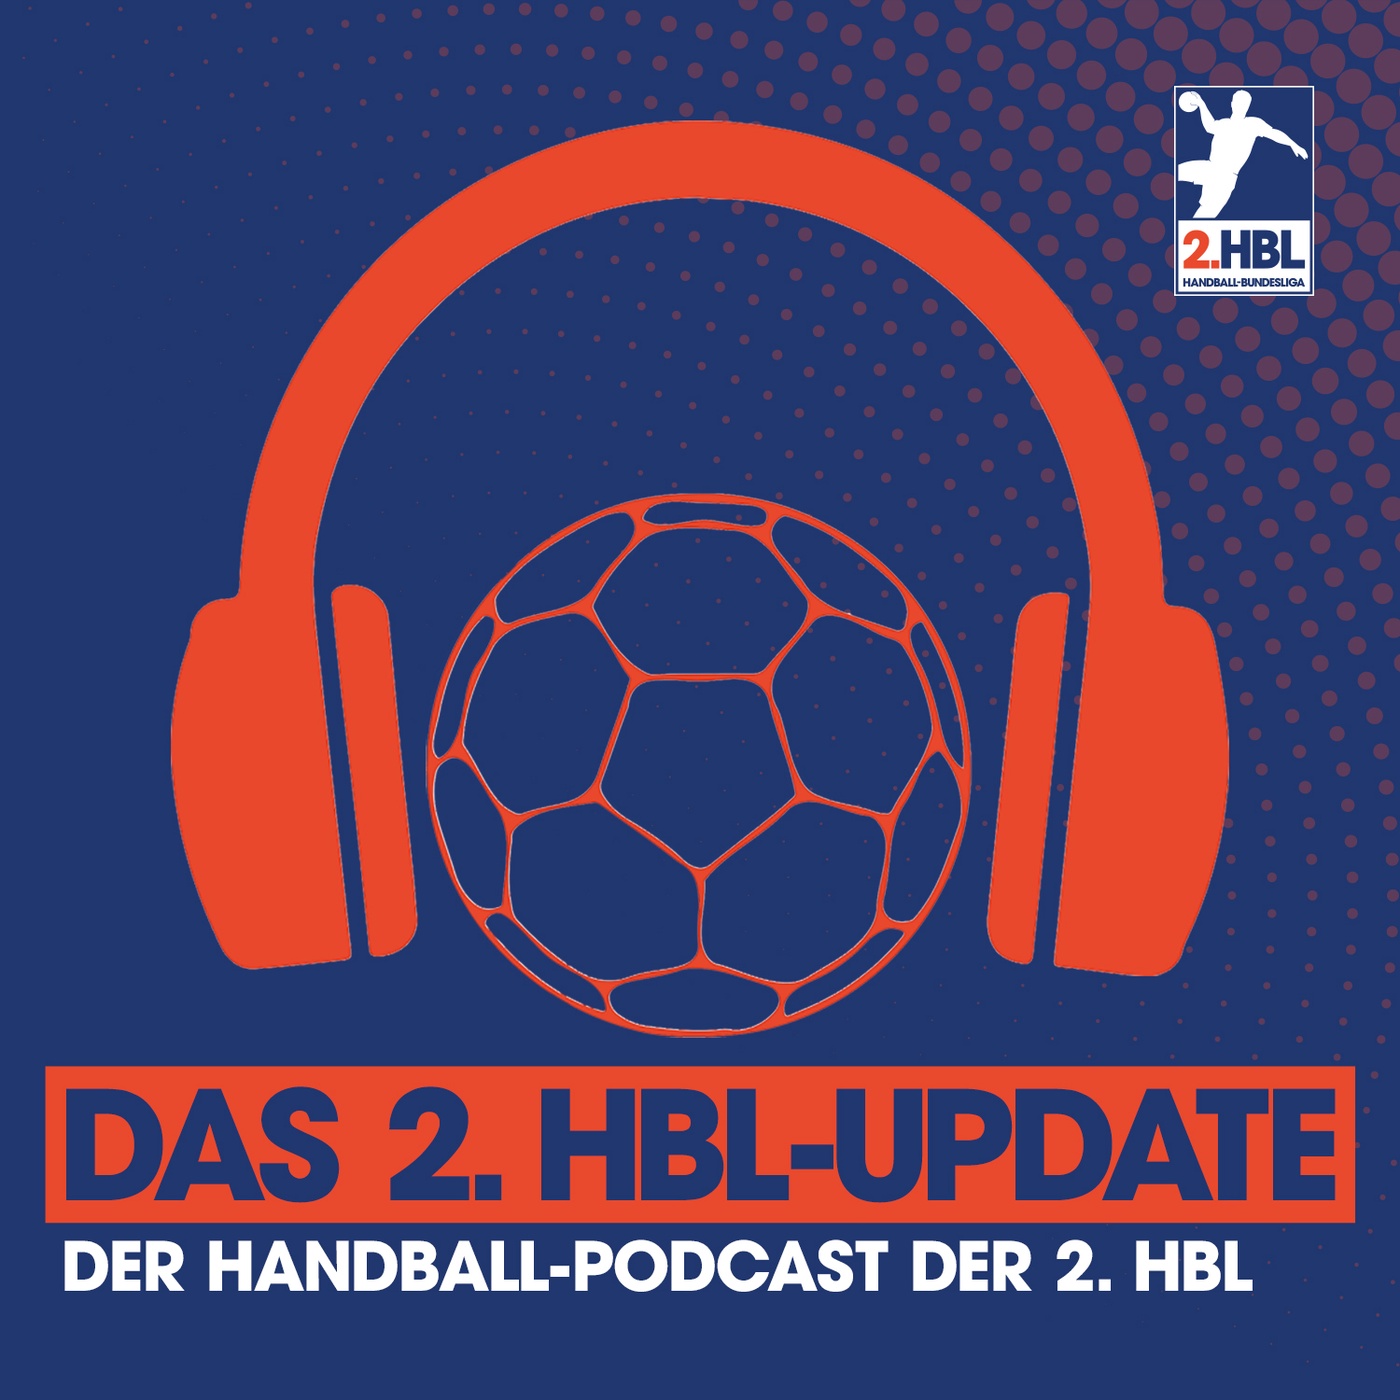 Das 2. HBL-Update - Der Handball-Podcast zur 2. HBL